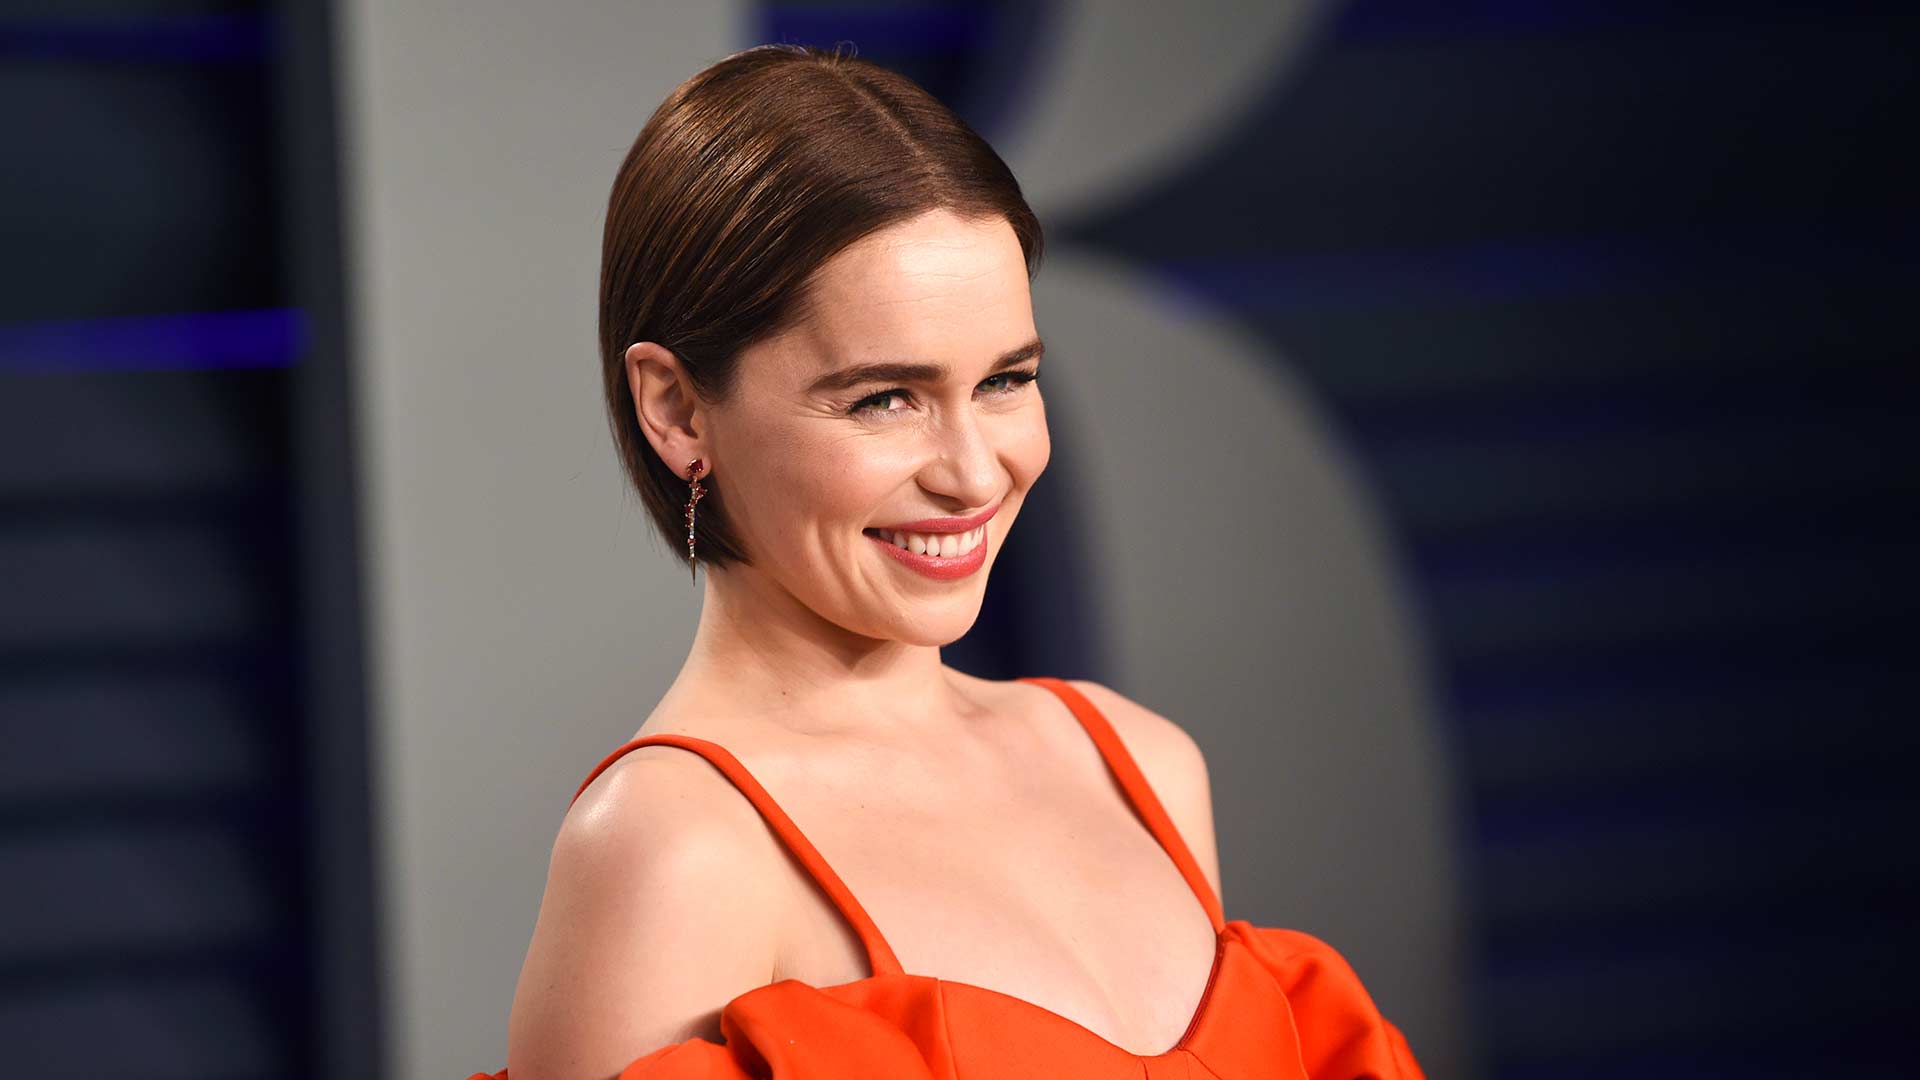 La actriz de 'Juego de Tronos' Emilia Clarke revela que sufrió dos aneurismas durante el rodaje